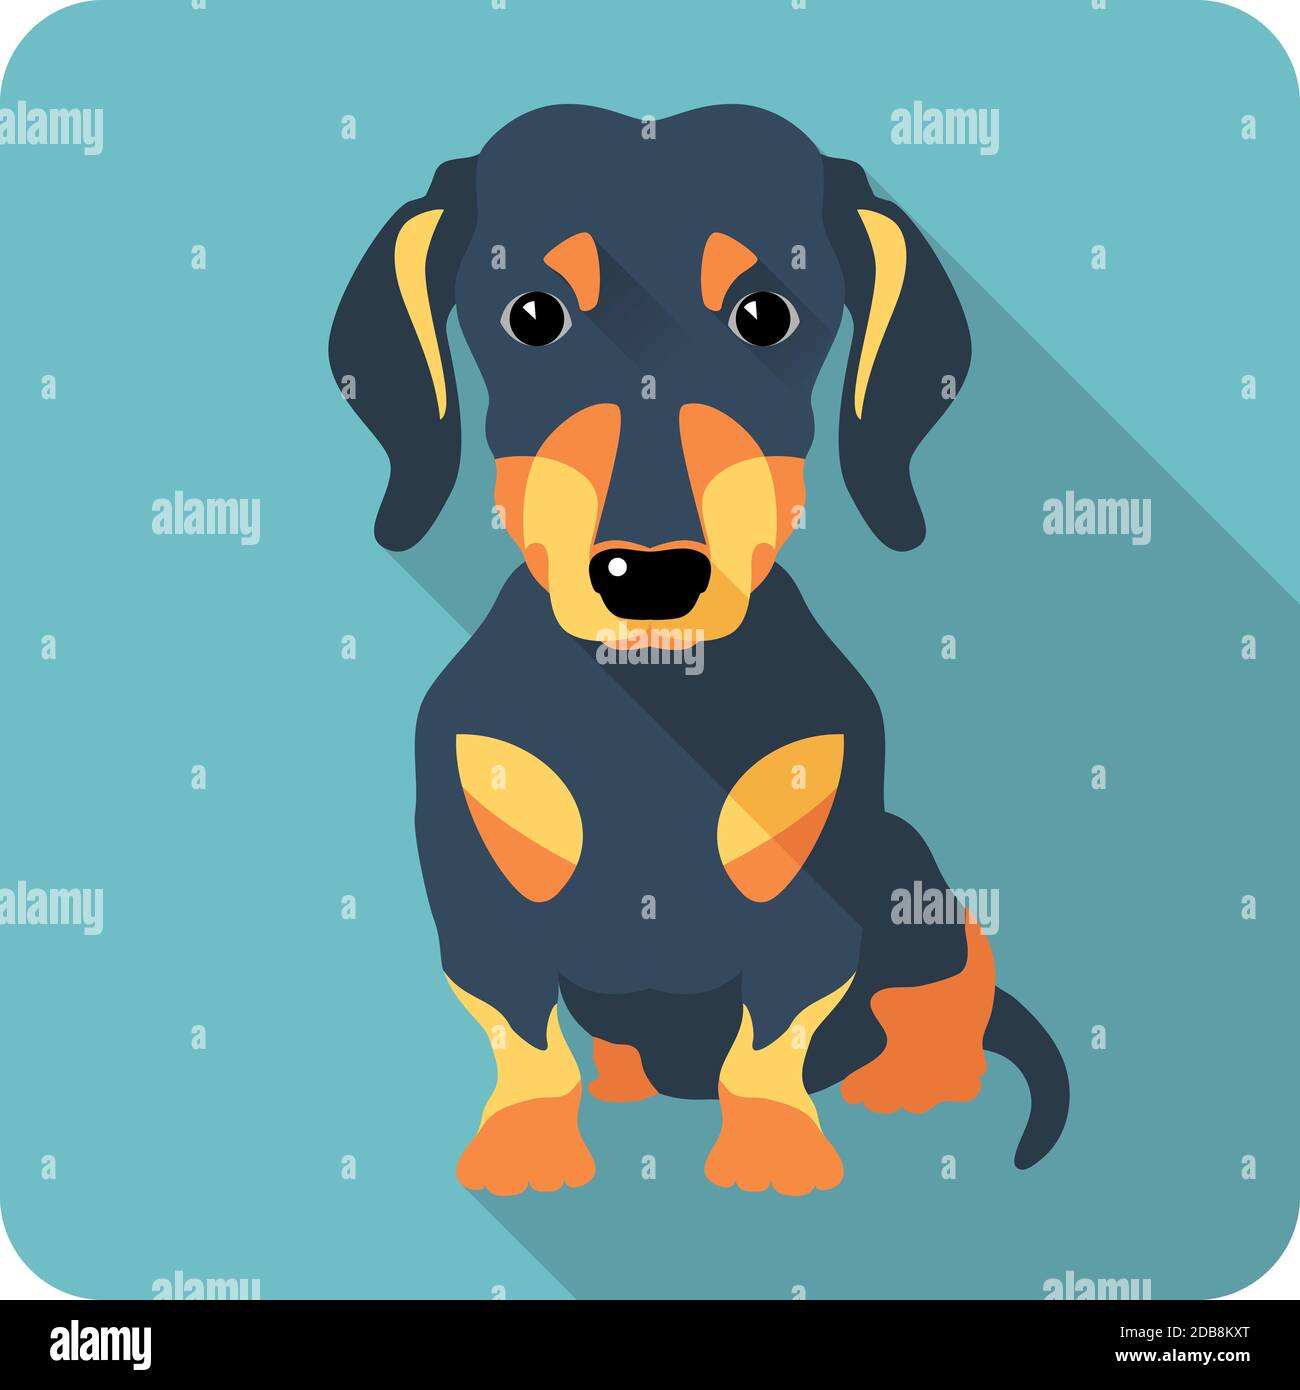 dog dachshund sitting icon flat design Stock Photo